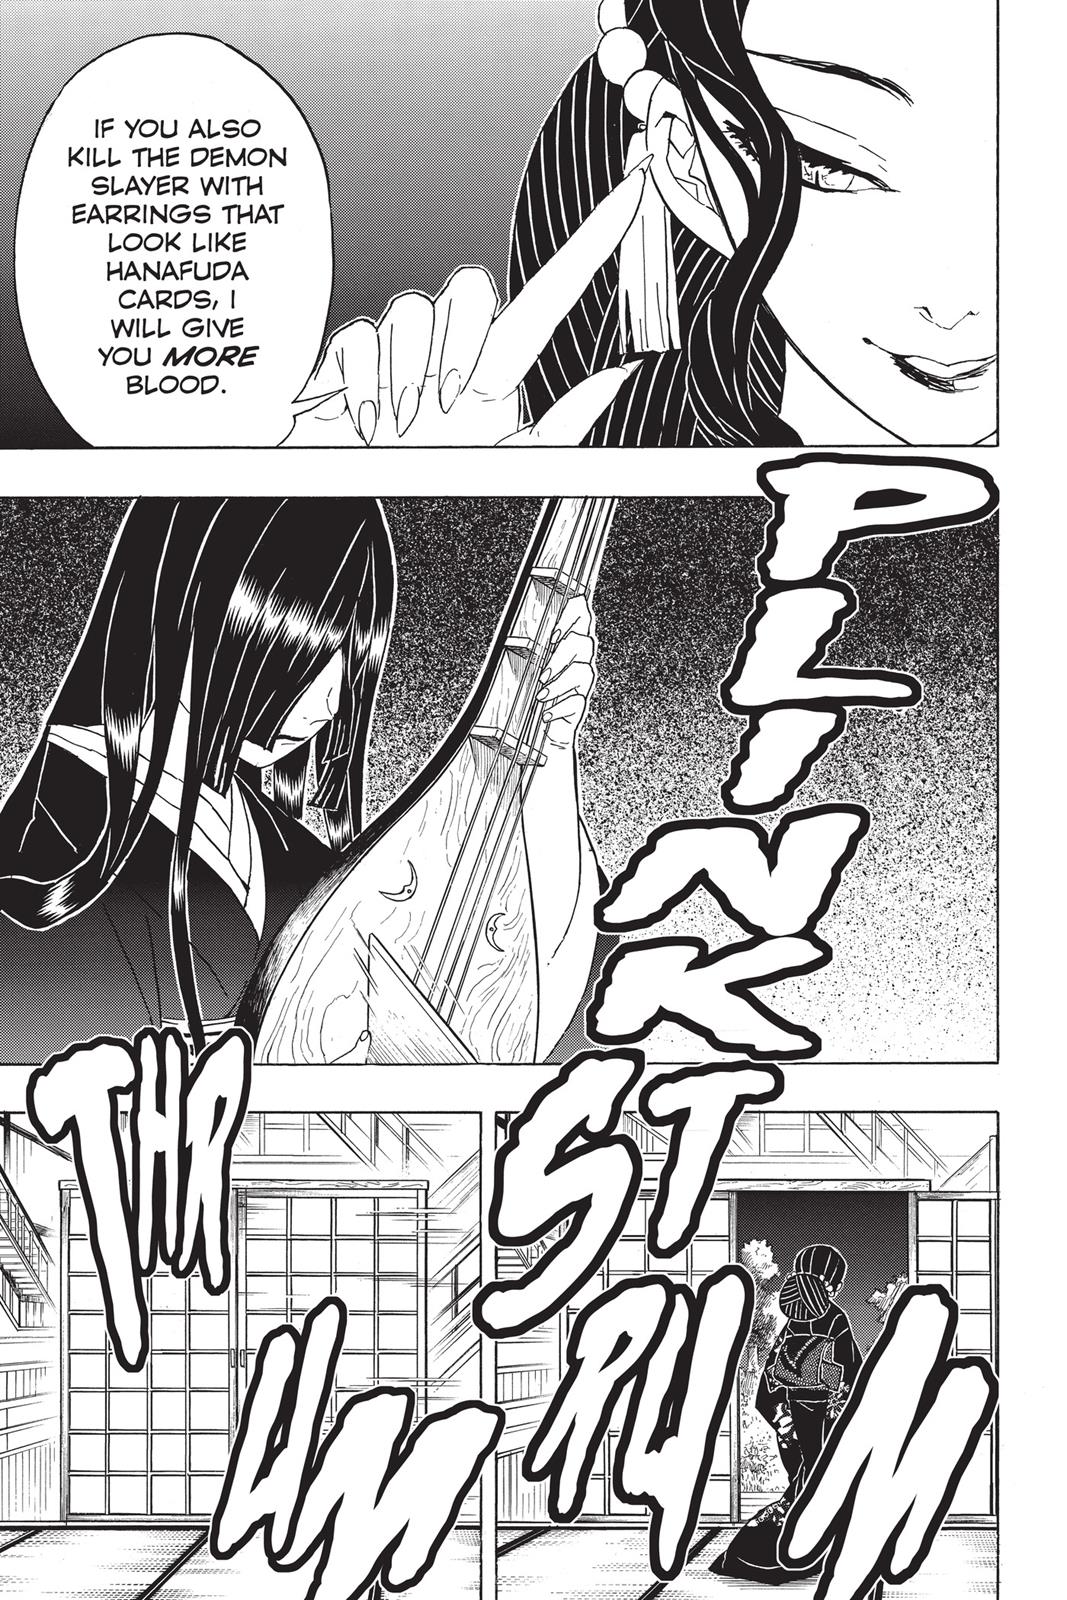 Demon Slayer Manga Manga Chapter - 52 - image 10